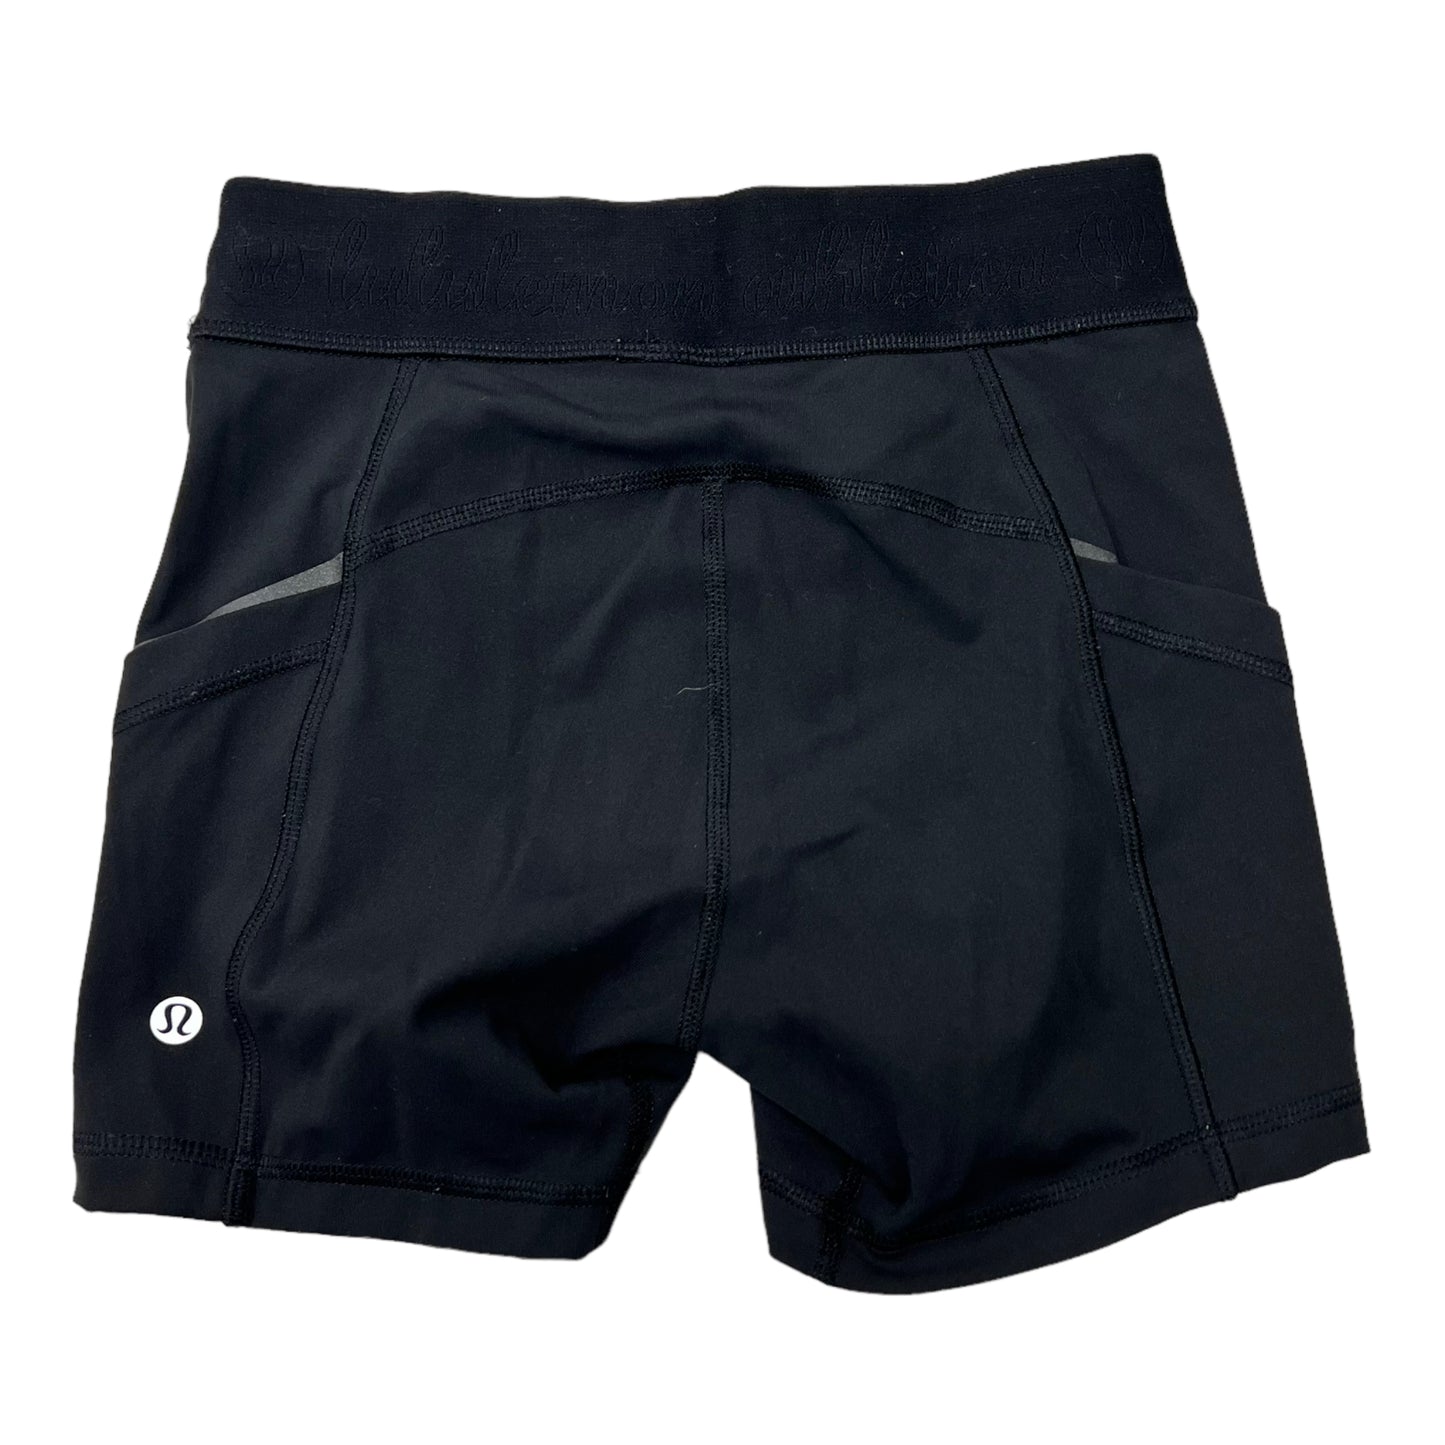 Athletic Shorts By Lululemon  Size: Xs